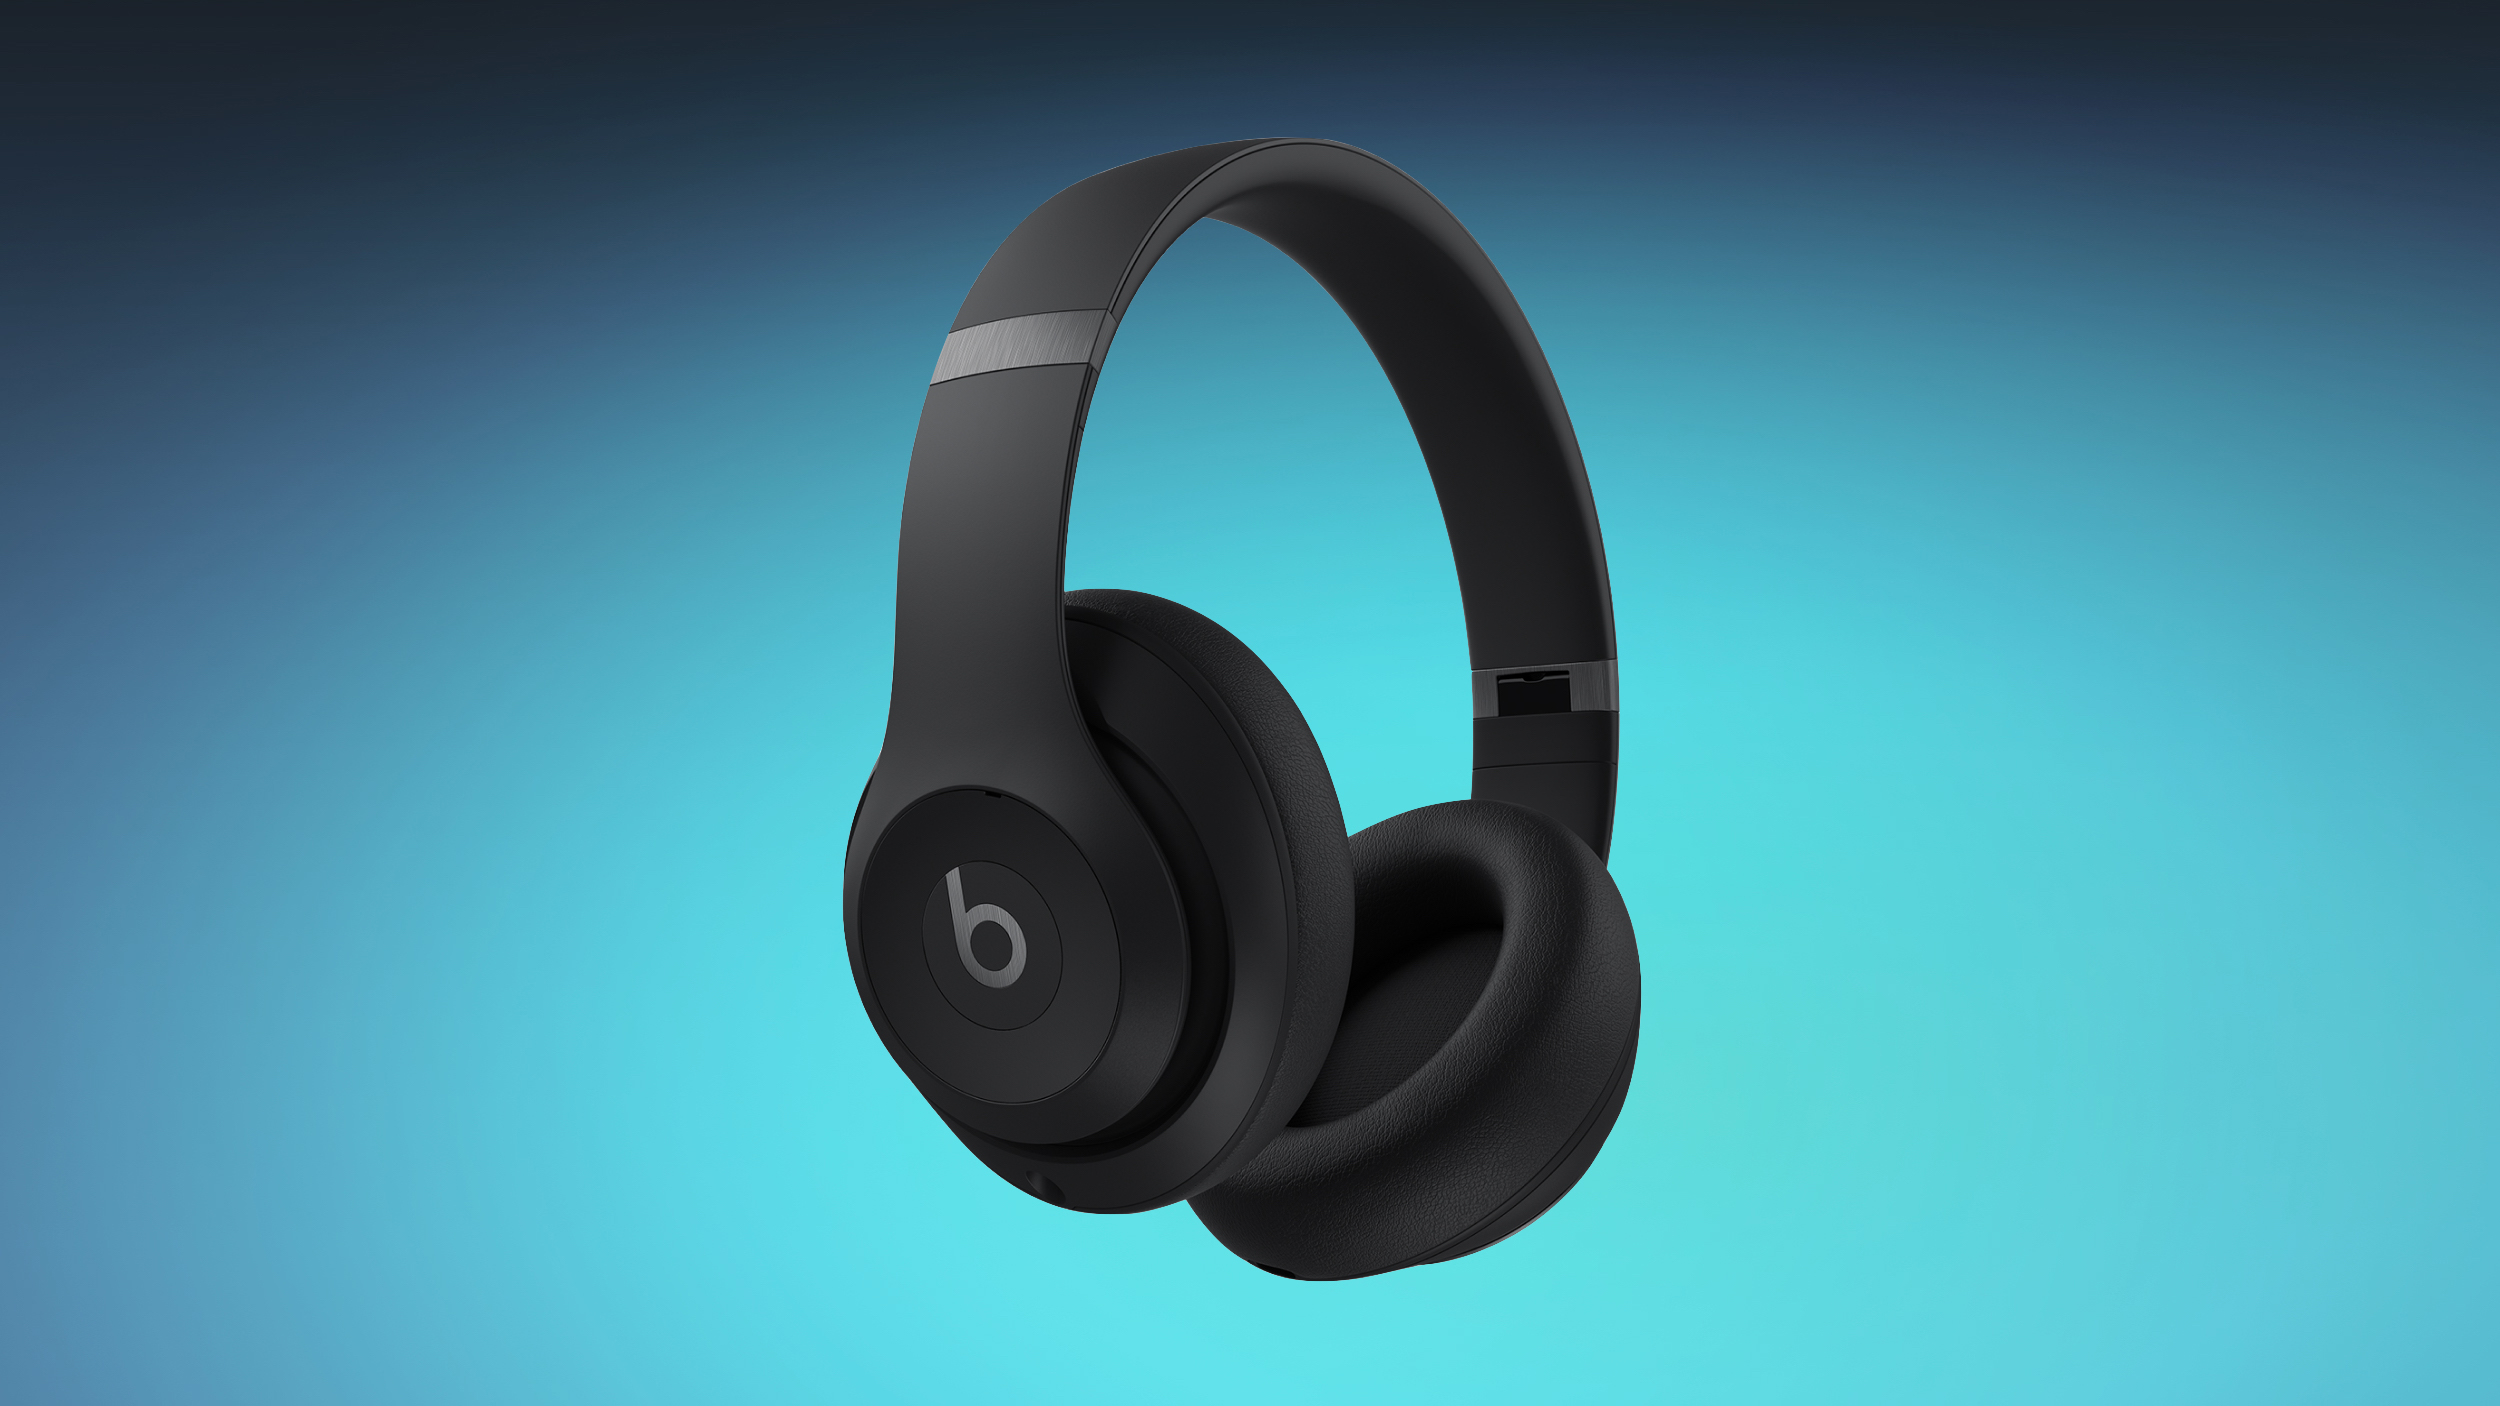 Deals: Get the New Beats Studio Pro Headphones for $249.95 ($99 Off)